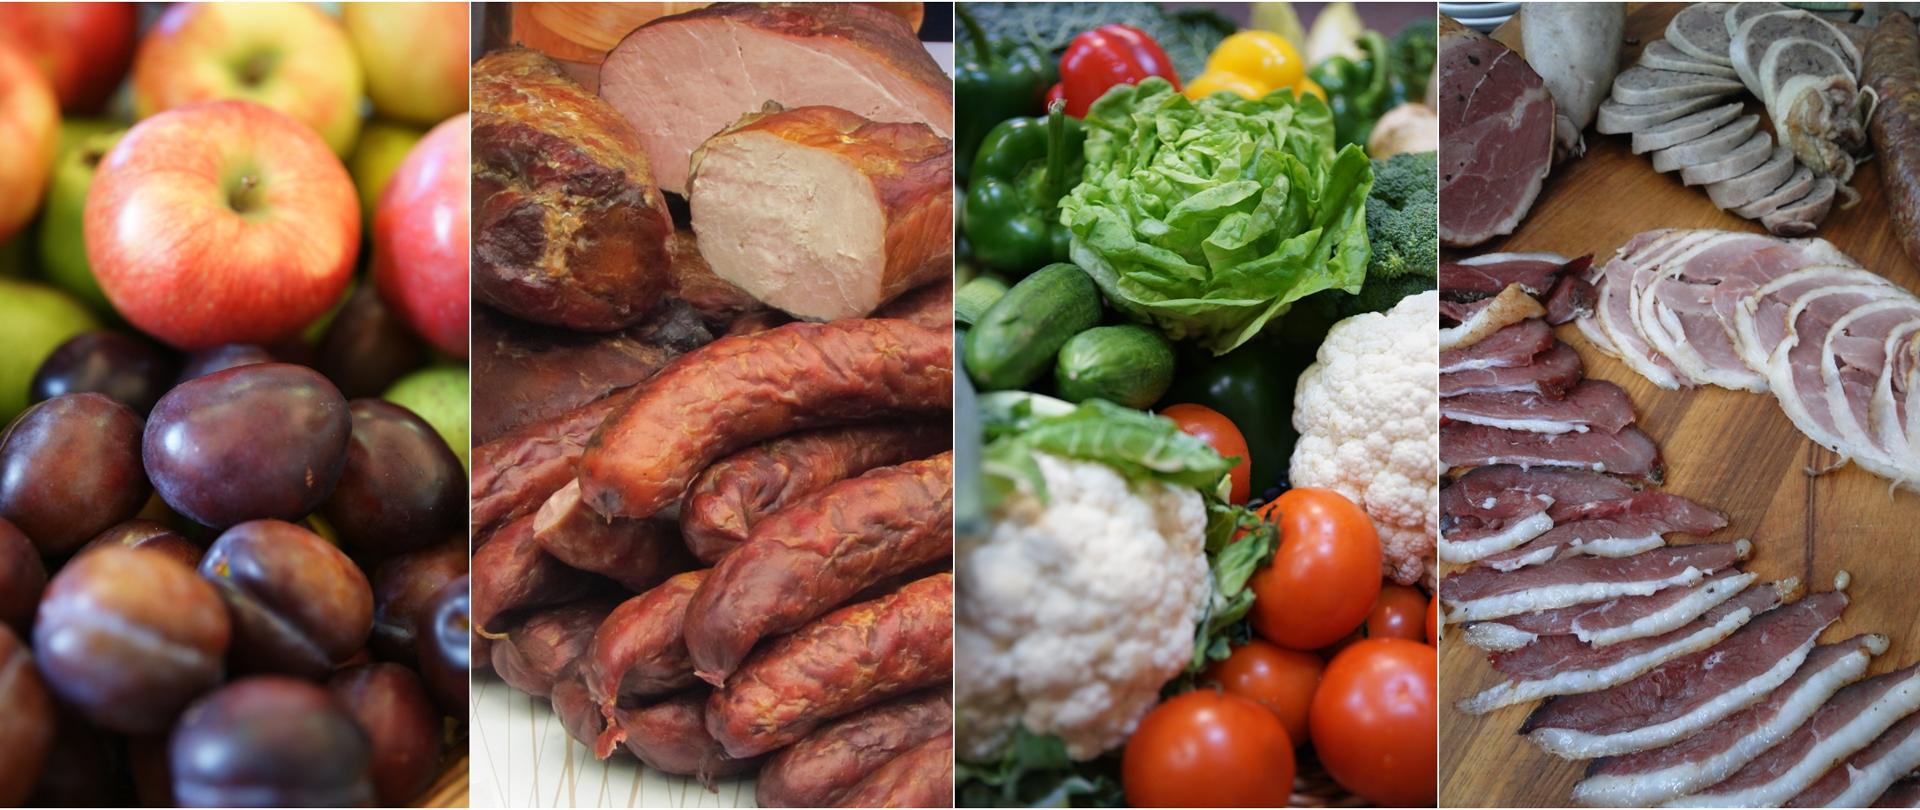 Polskie owoce, warzywa i produkty mięsne